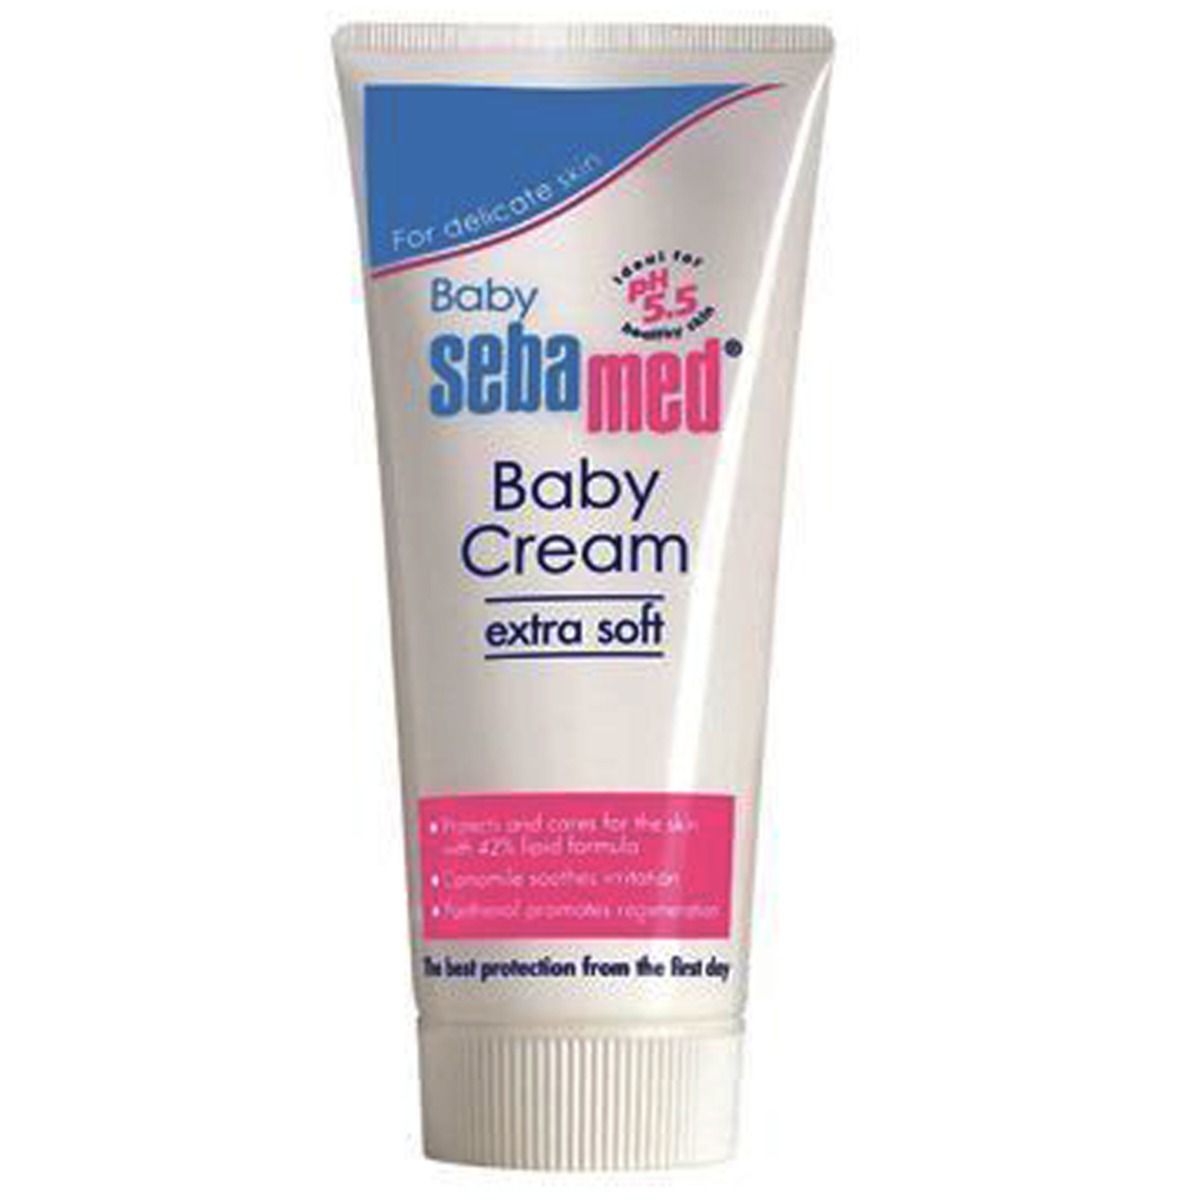 Sebamed Extra Soft Baby Cream, 50 ml, Pack of 1 